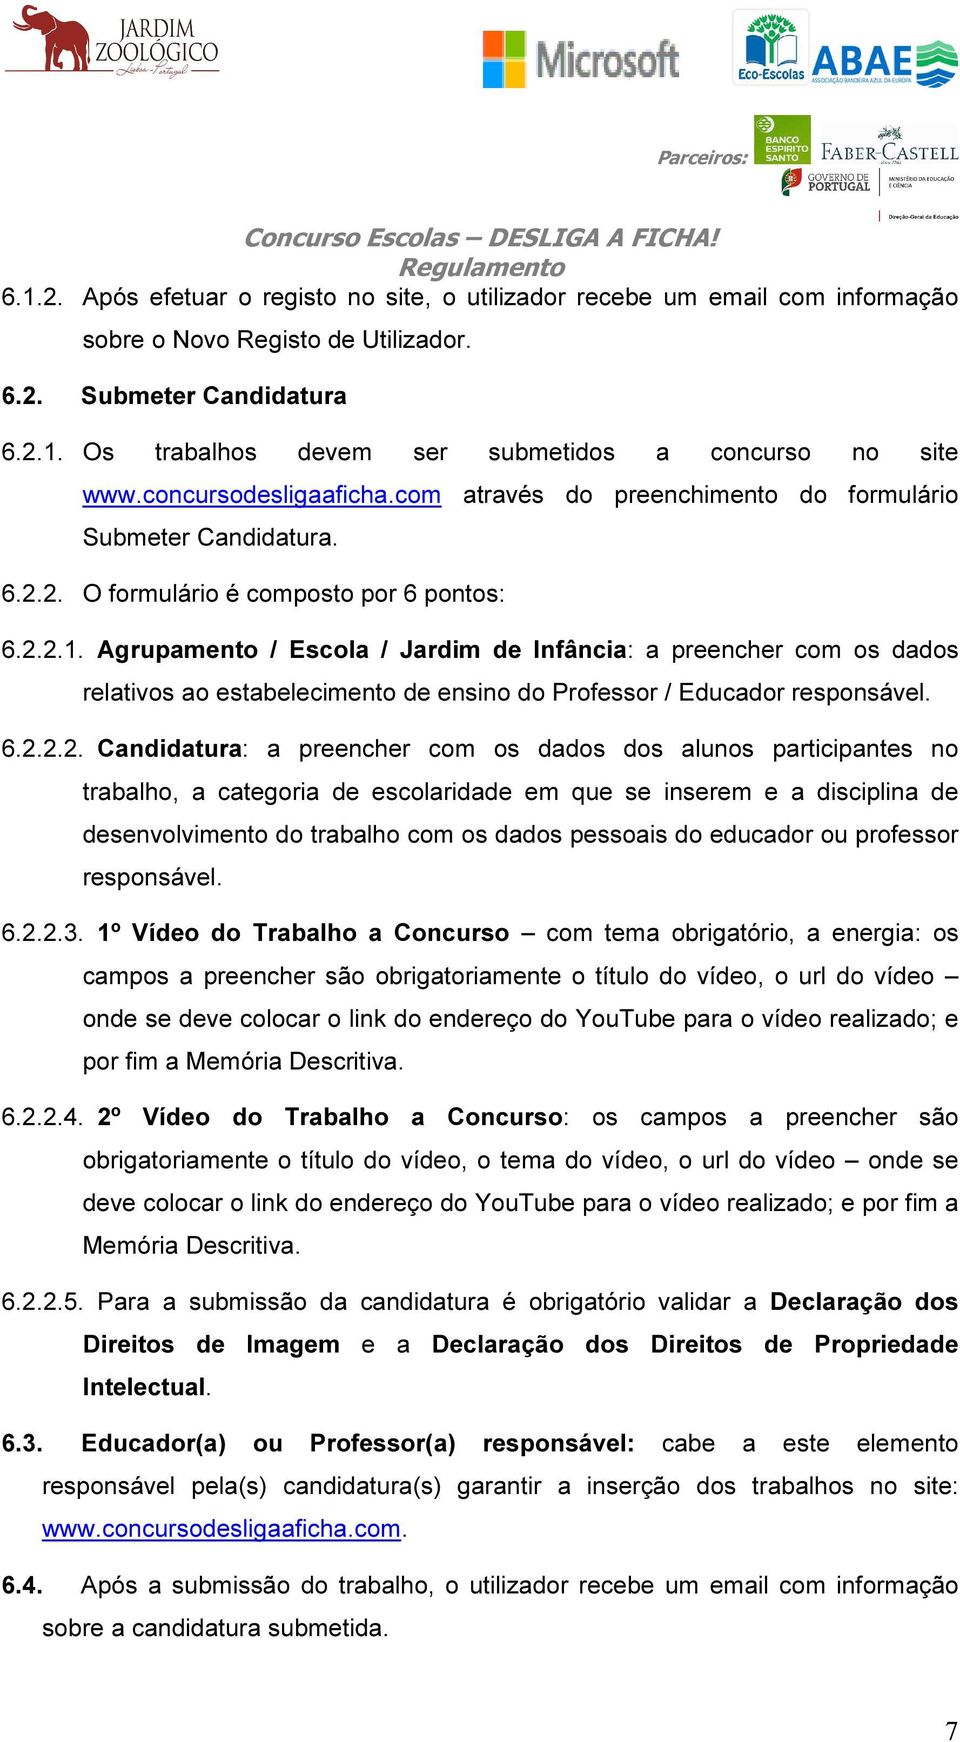 Agrupamento / Escola / Jardim de Infância: a preencher com os dados relativos ao estabelecimento de ensino do Professor / Educador responsável. 6.2.